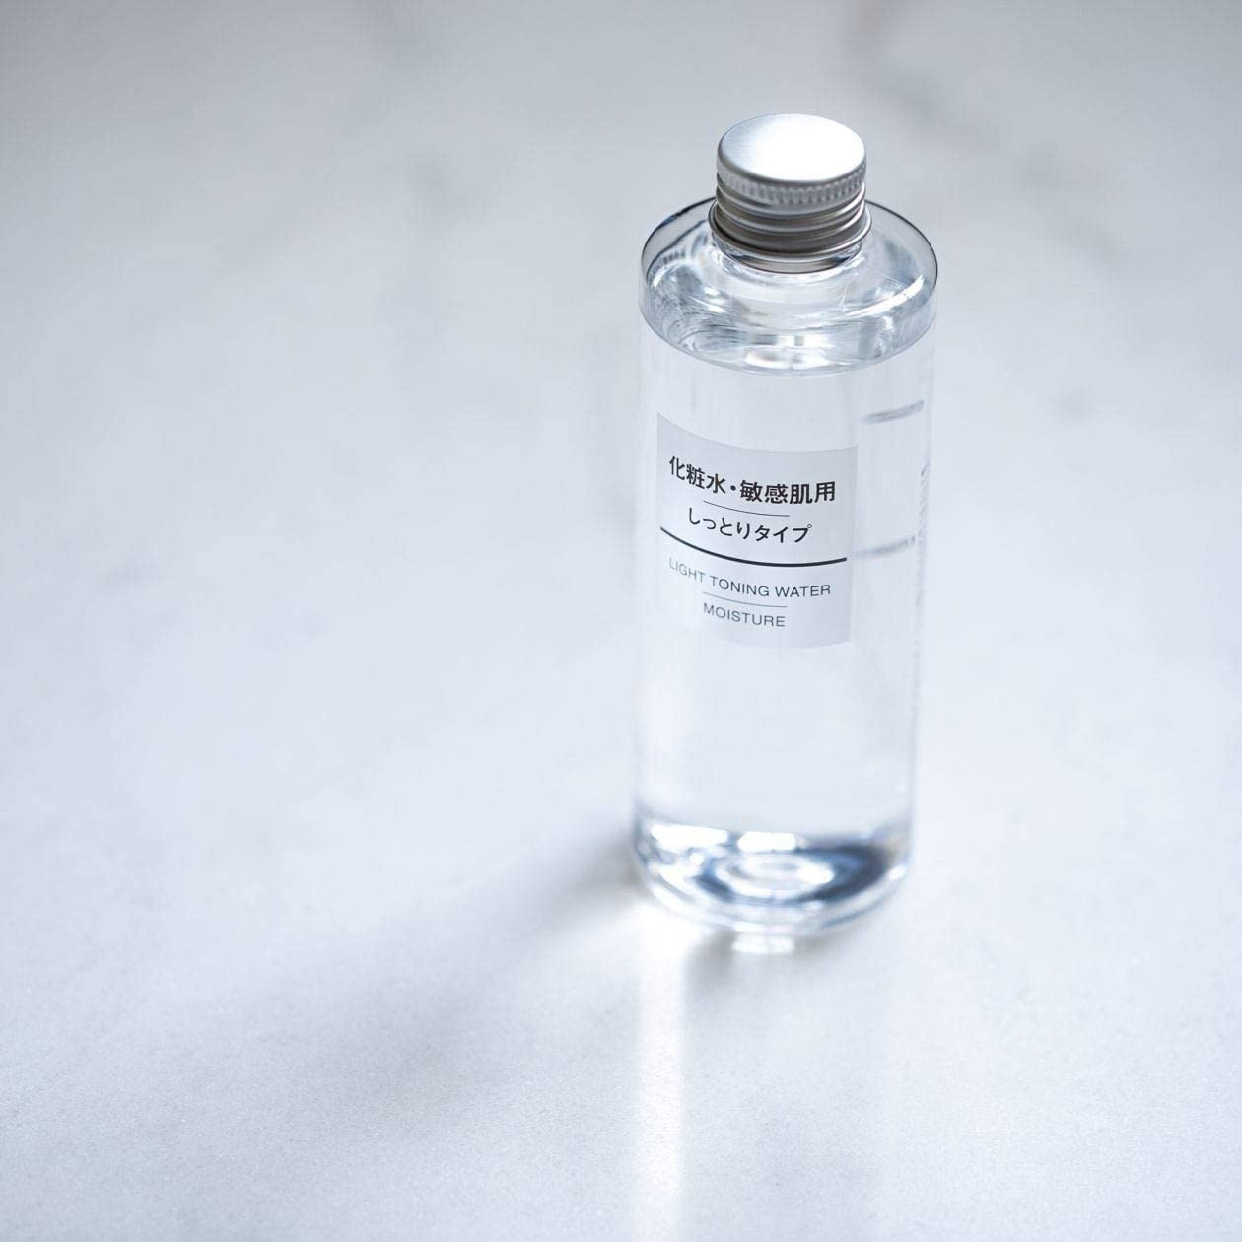 無印良品(MUJI) 化粧水・敏感肌用・しっとりタイプの商品画像サムネ8 